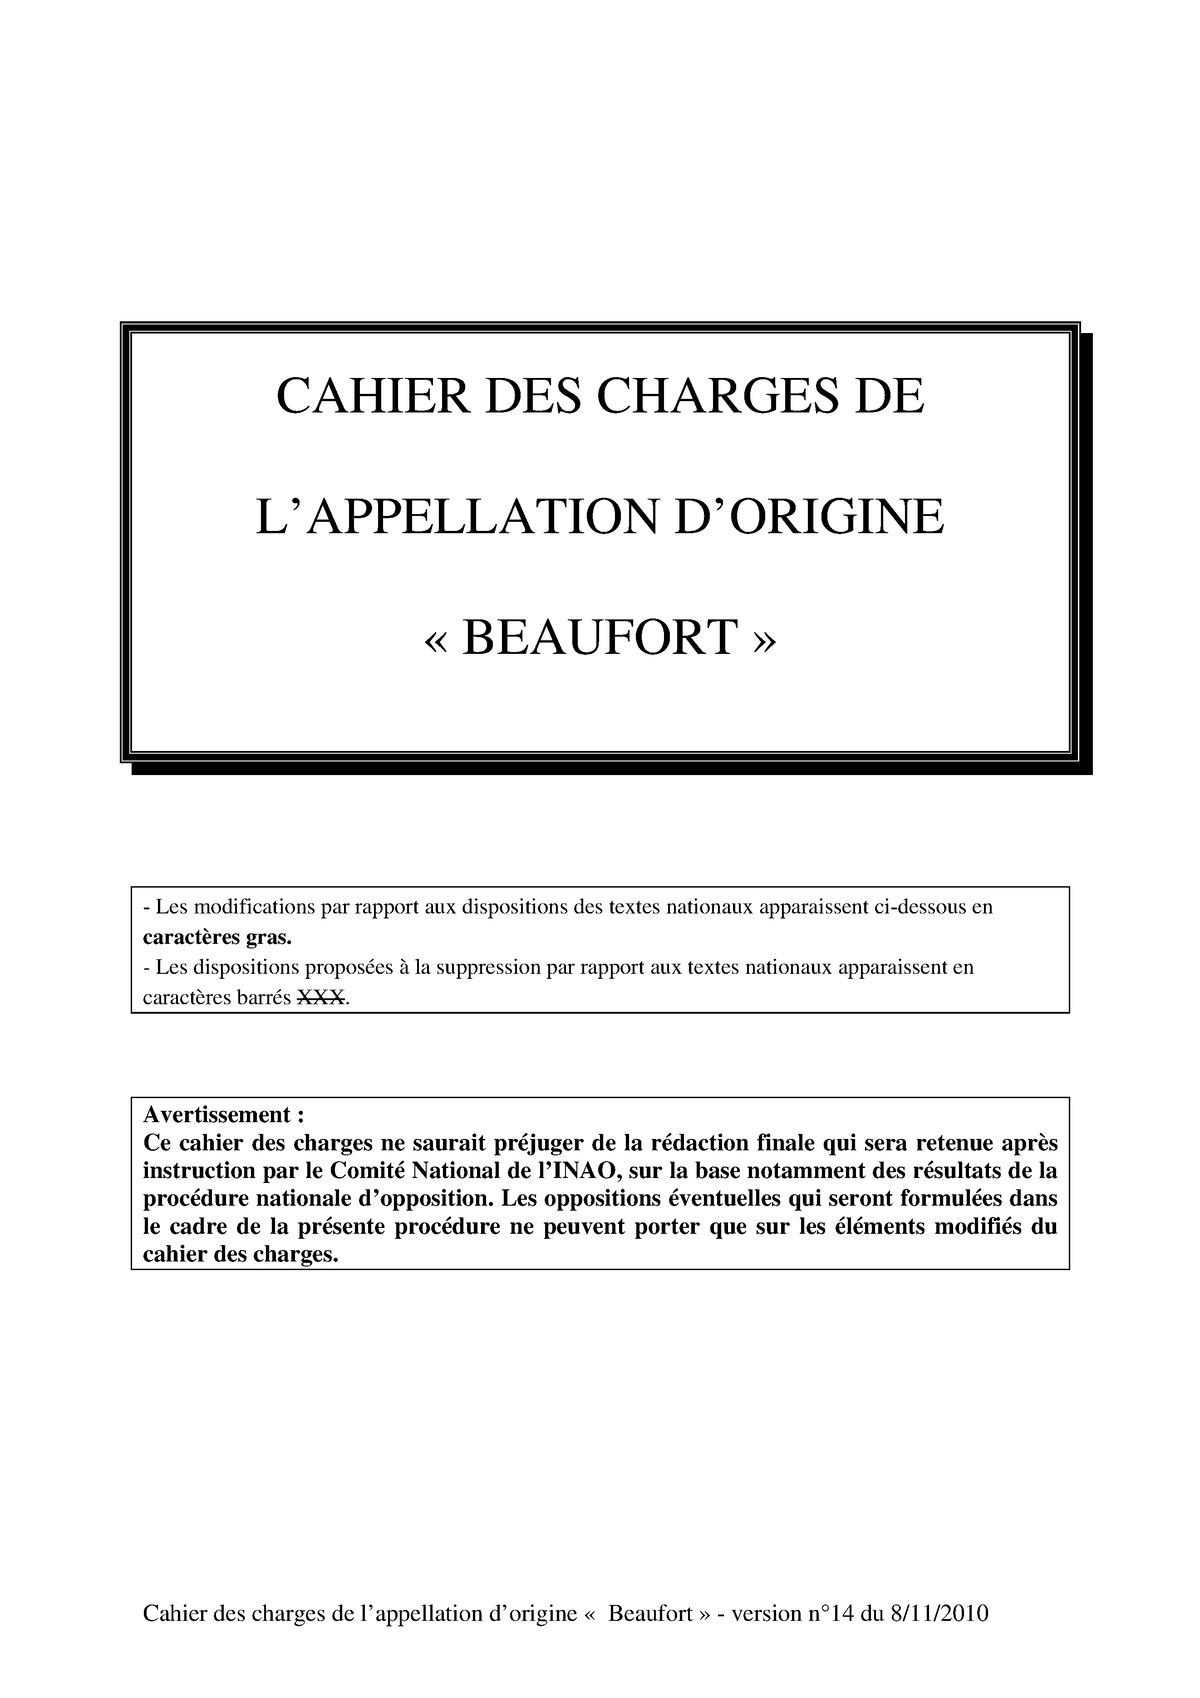 ETIQUETTES DE CASEINE CHIFFRES NOIRS-0 A 9 - PAR 10 X 100 - La